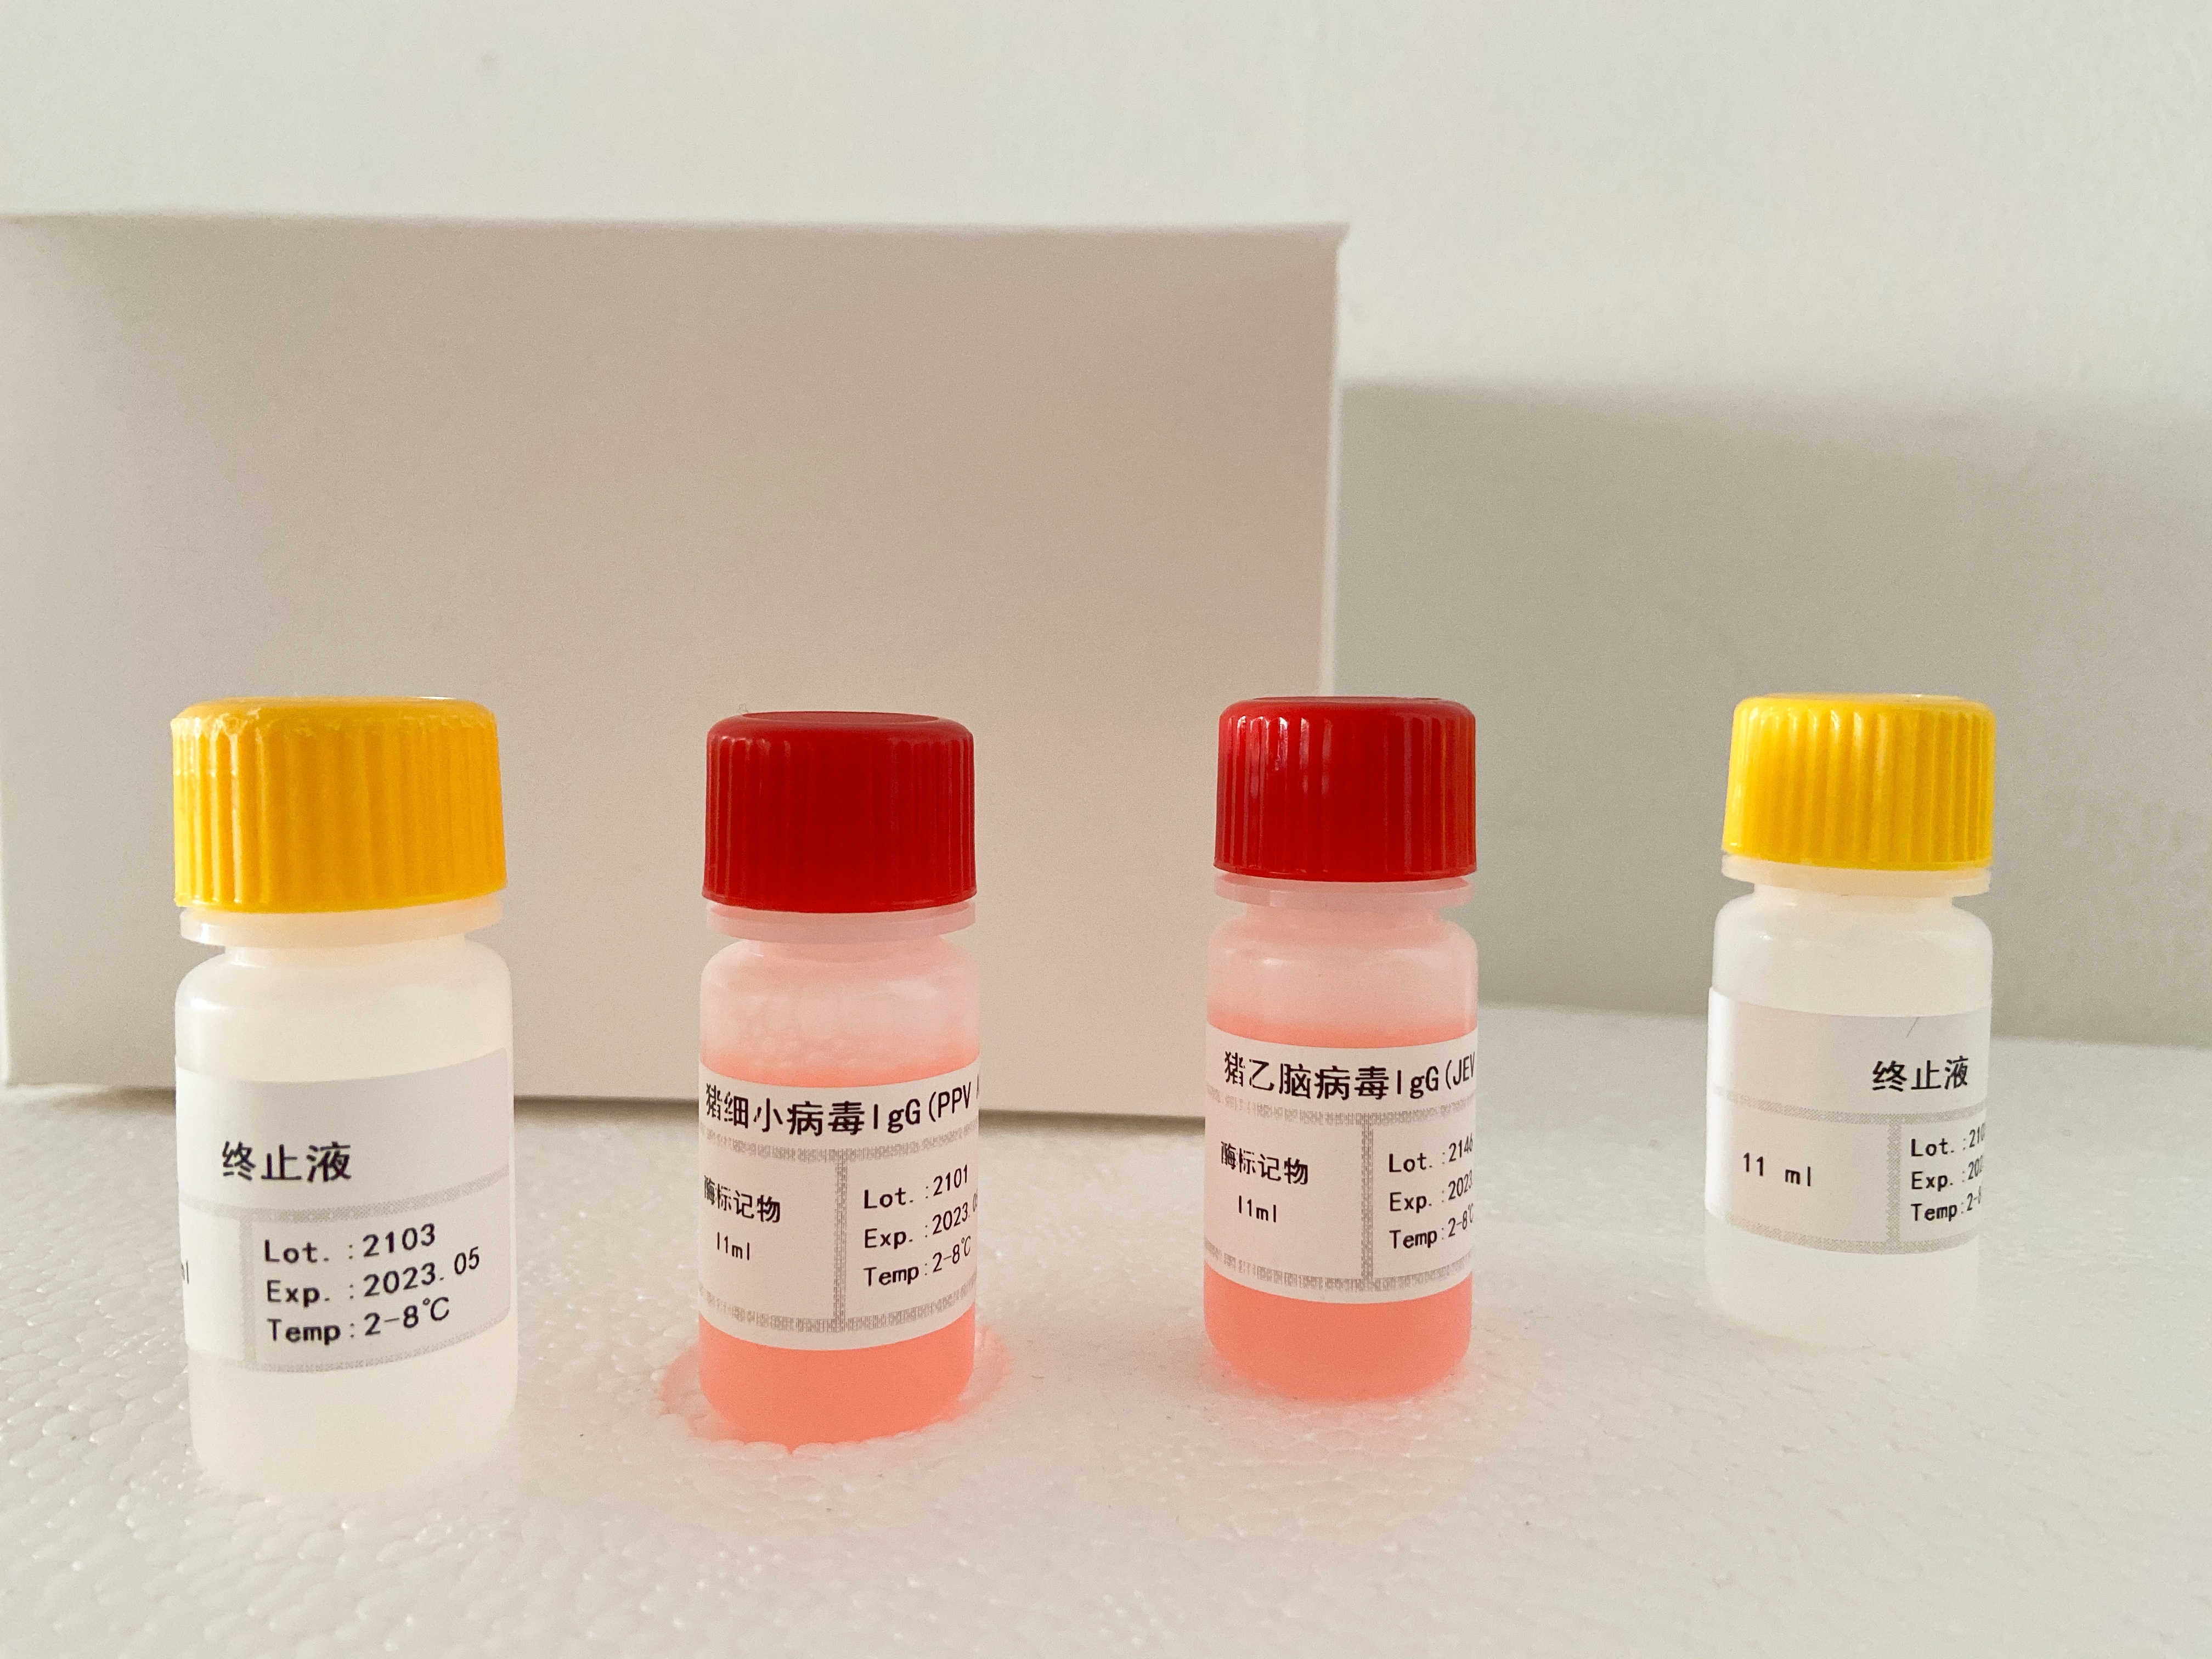 小鼠色素上皮衍生因子(PEDF)检测试剂盒